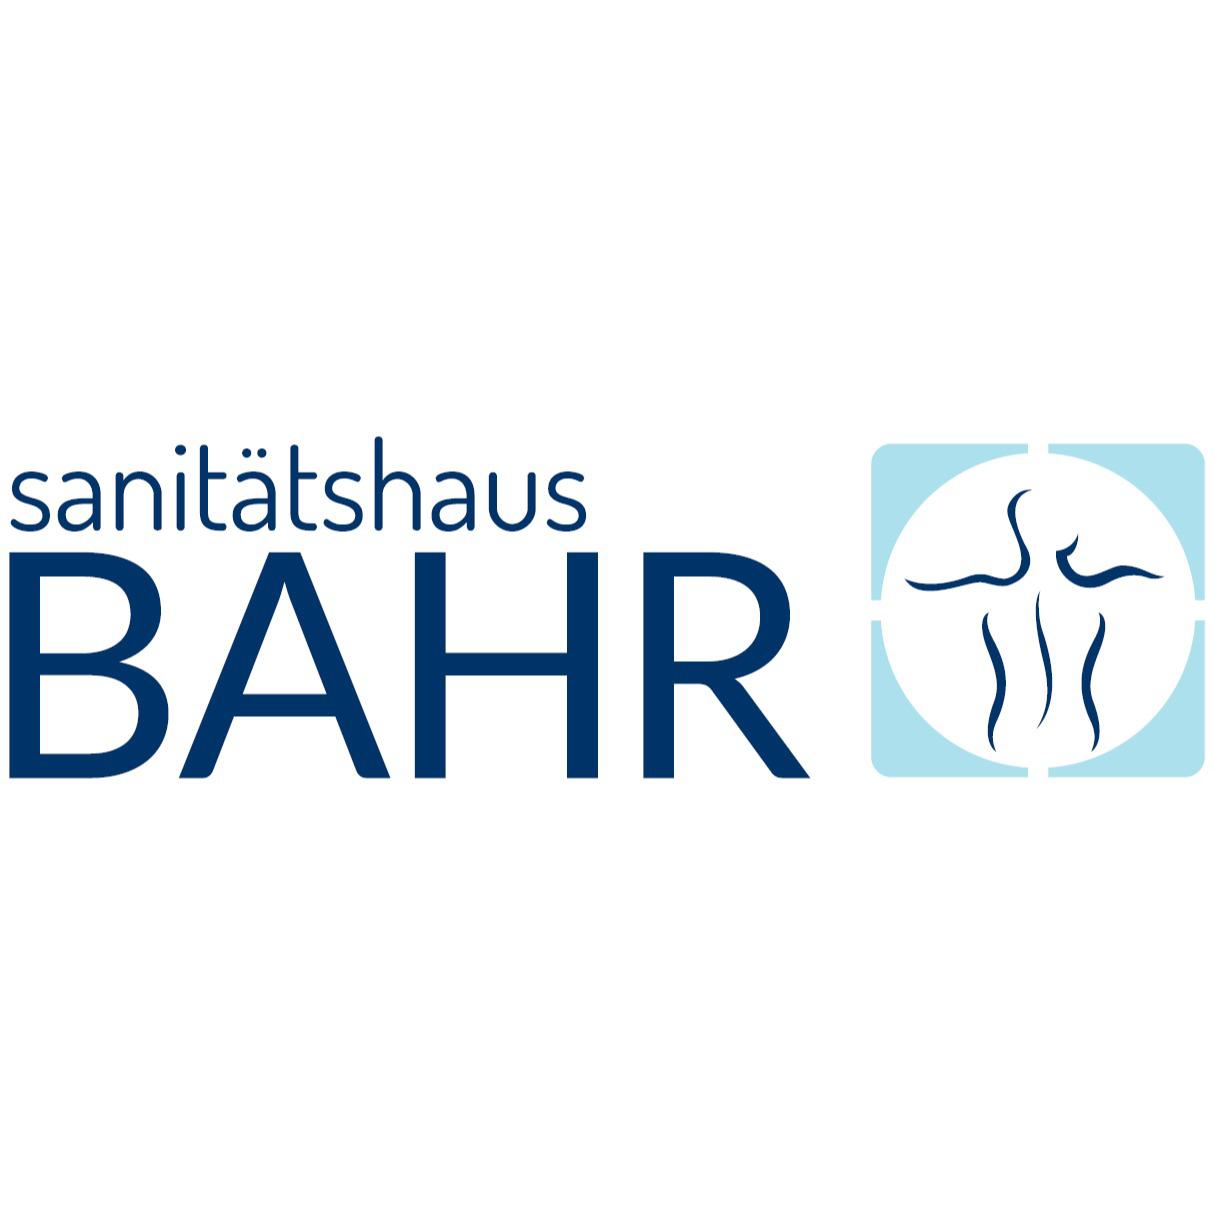 Sanitätshaus BAHR - Orthopädietechnik, Schuhtechnik & Sanitätshaus in Kiel - Logo